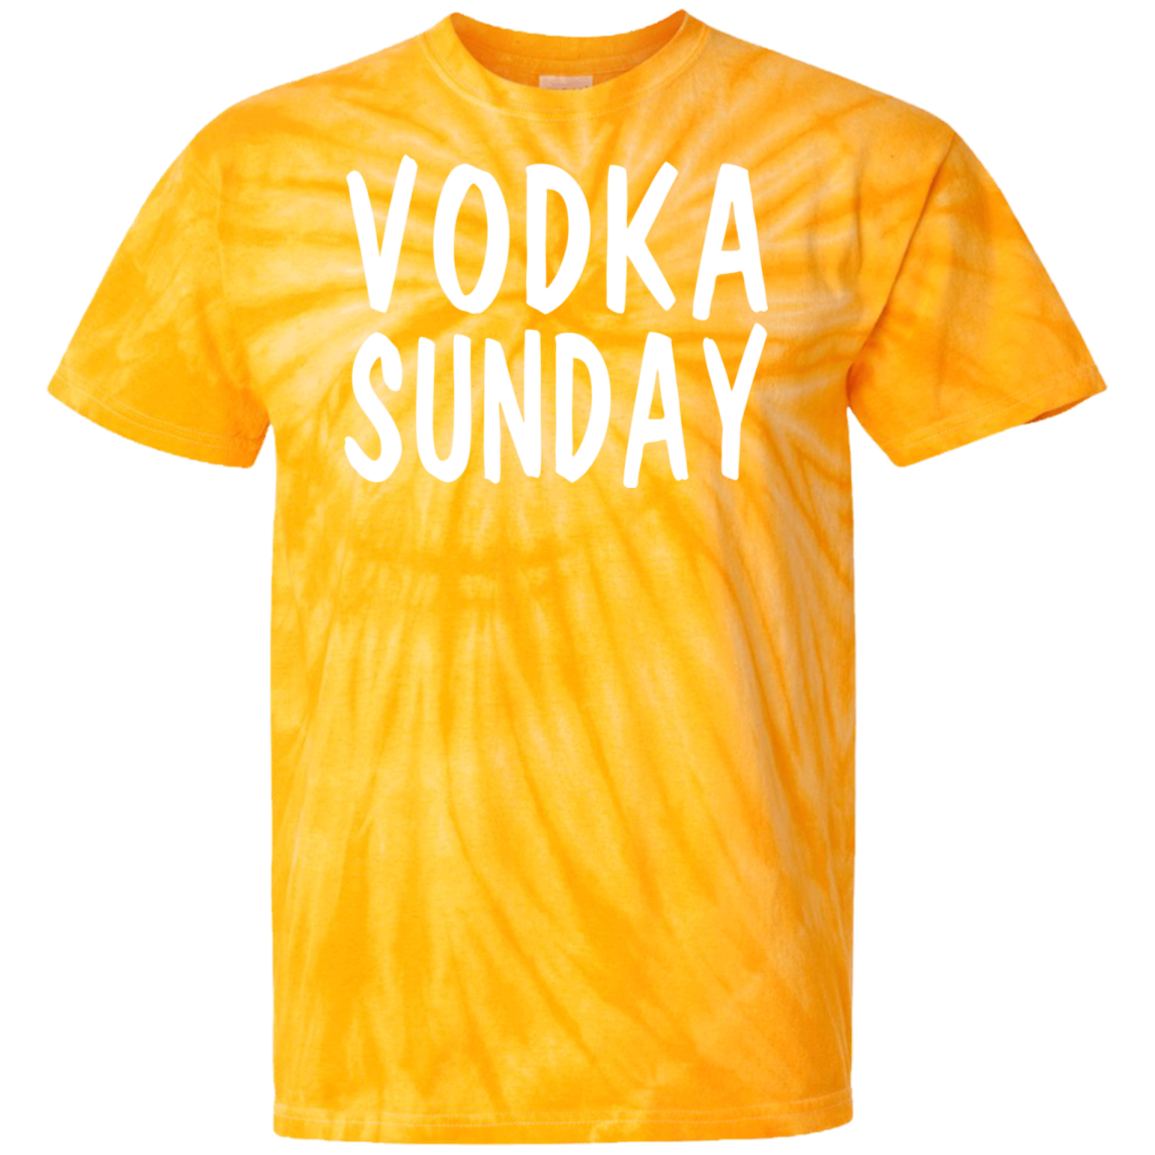 Vodka Sunday Tie Dye T-Shirt - Vodka Sunday